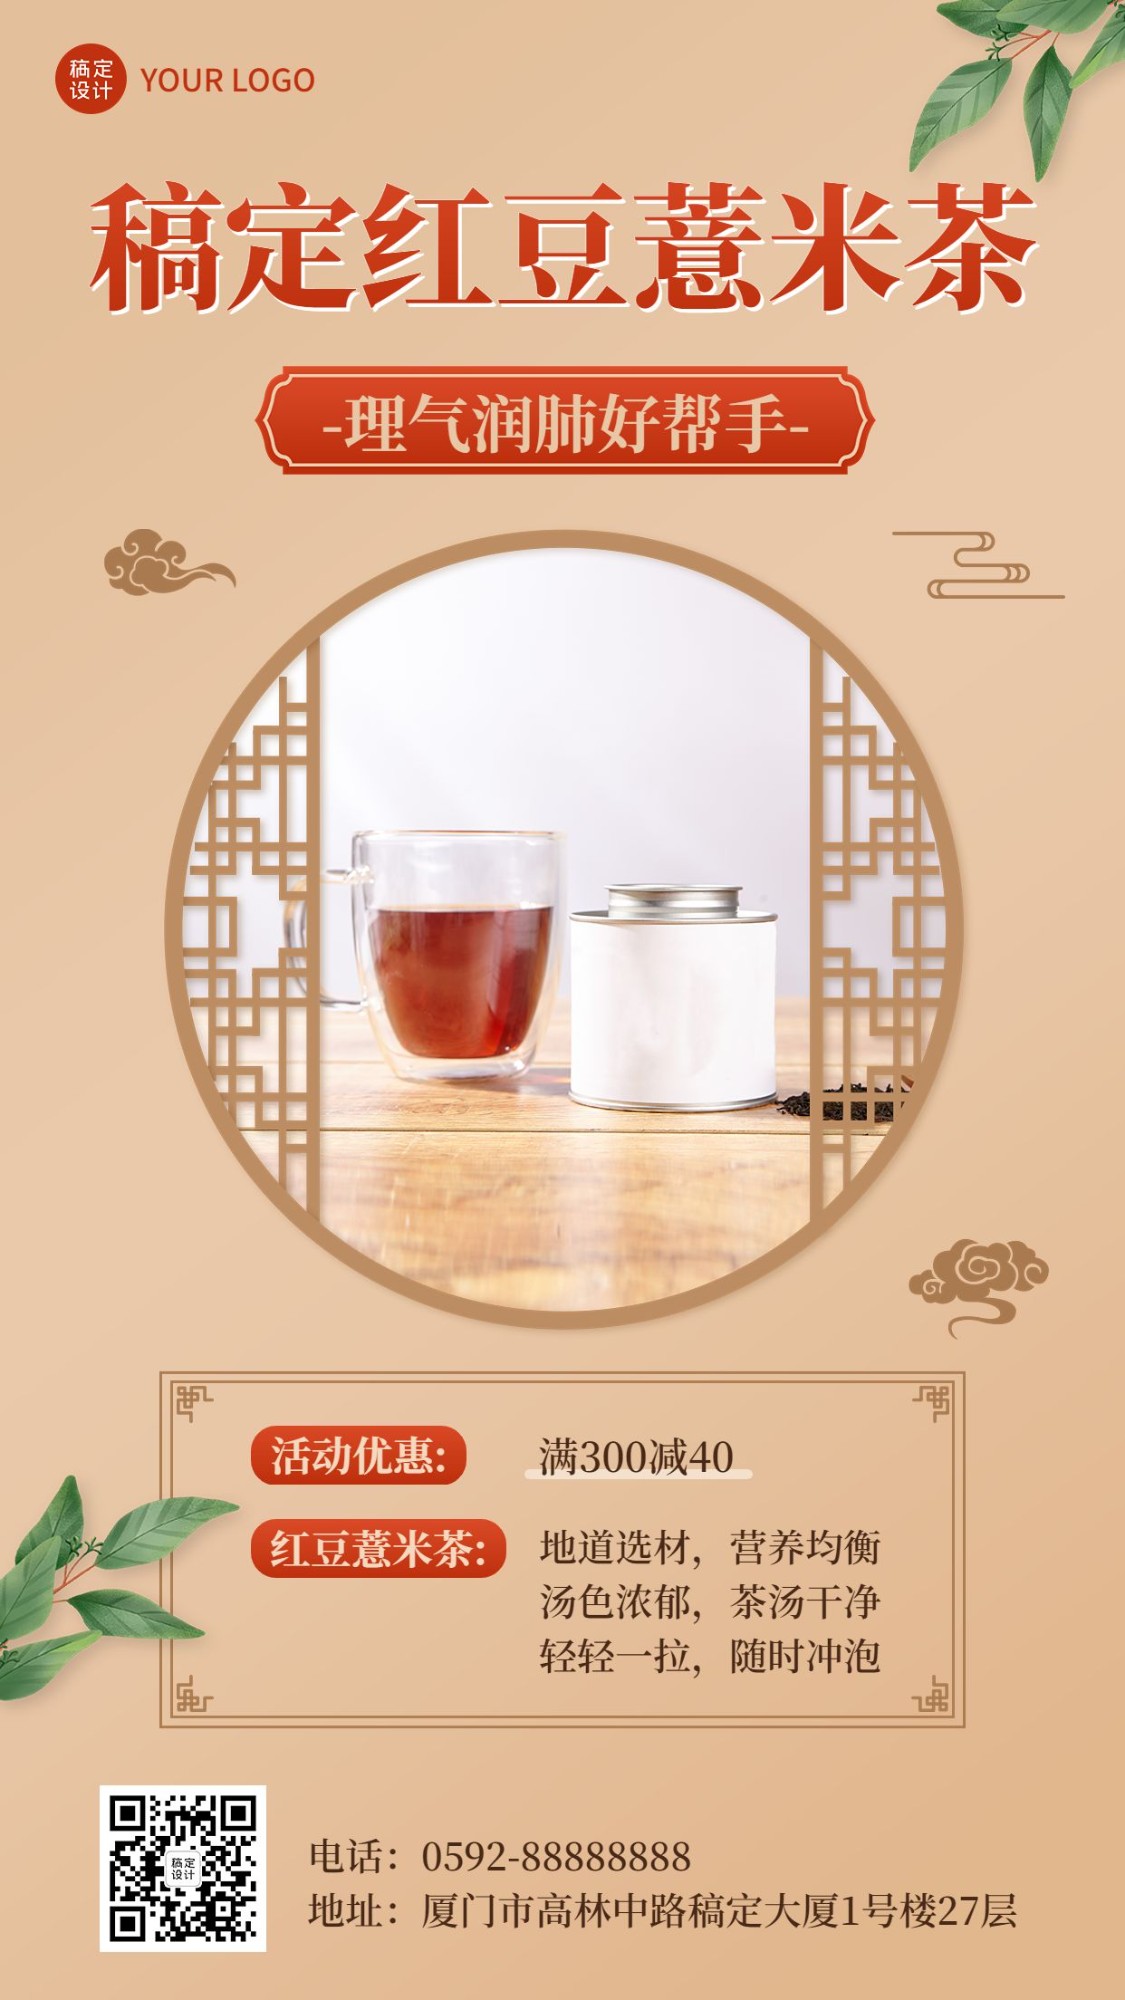 微商养生保健产品展示营销复古中国风手机海报预览效果